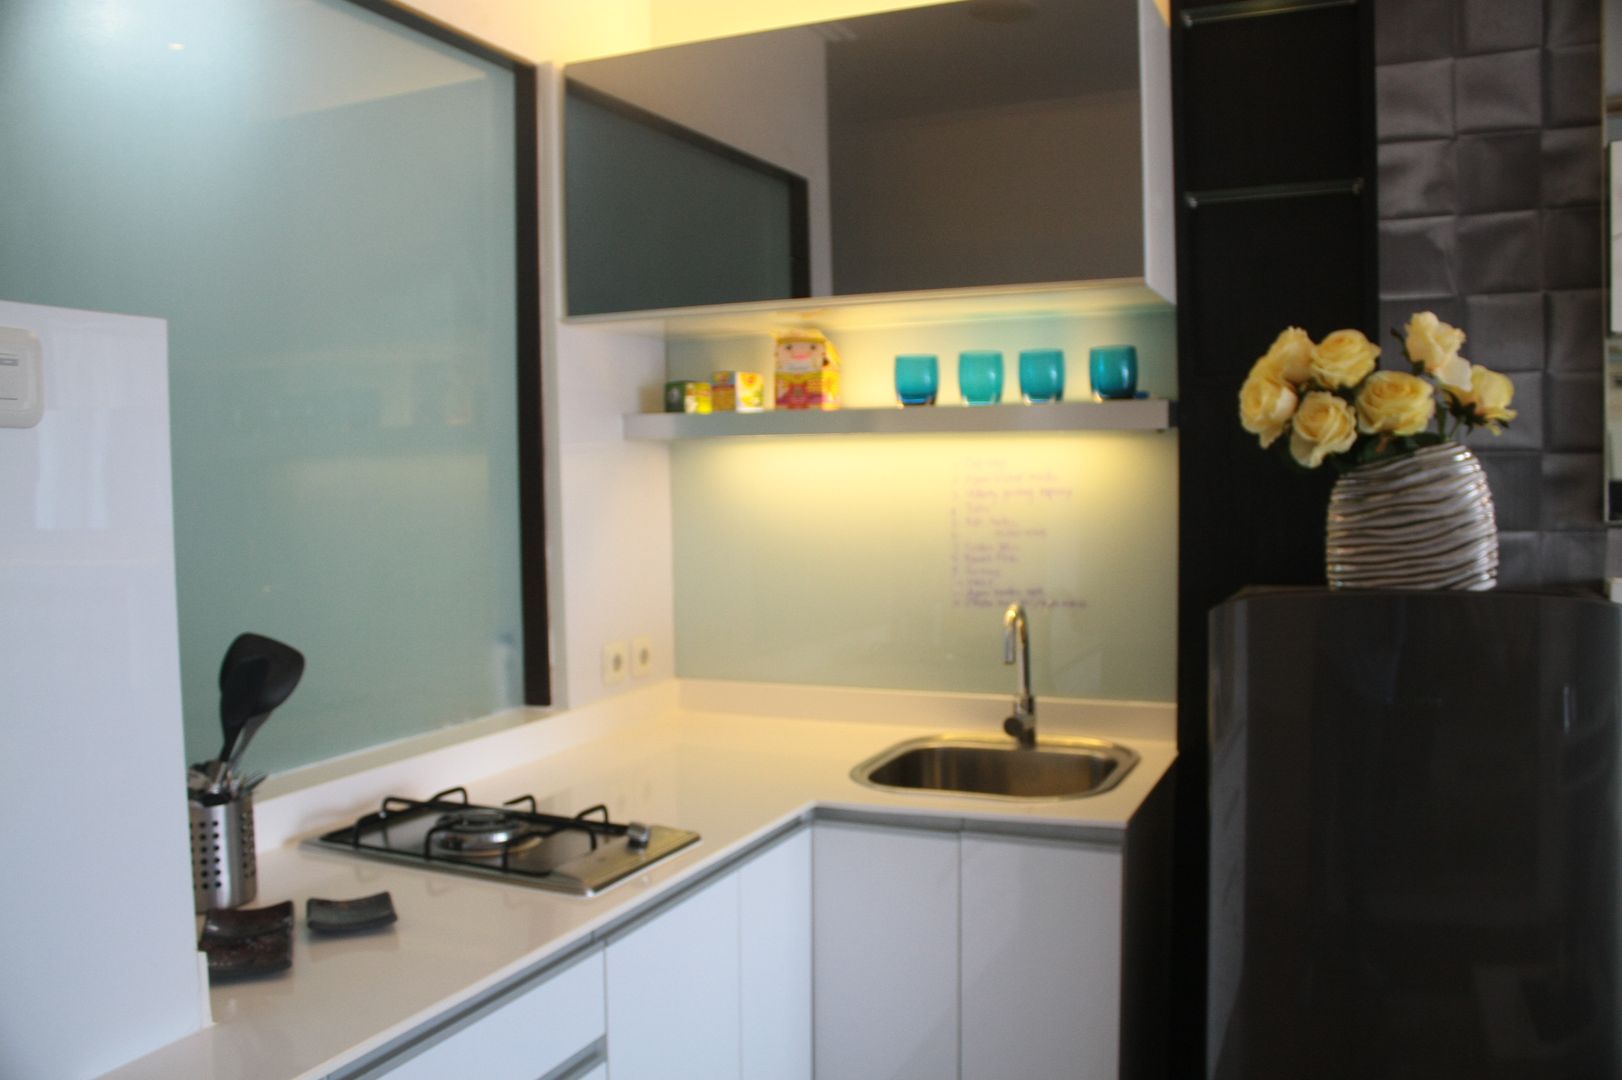 Apartment mungil yang simple, efisien dan elegan, Exxo interior:modern oleh Exxo interior, Modern